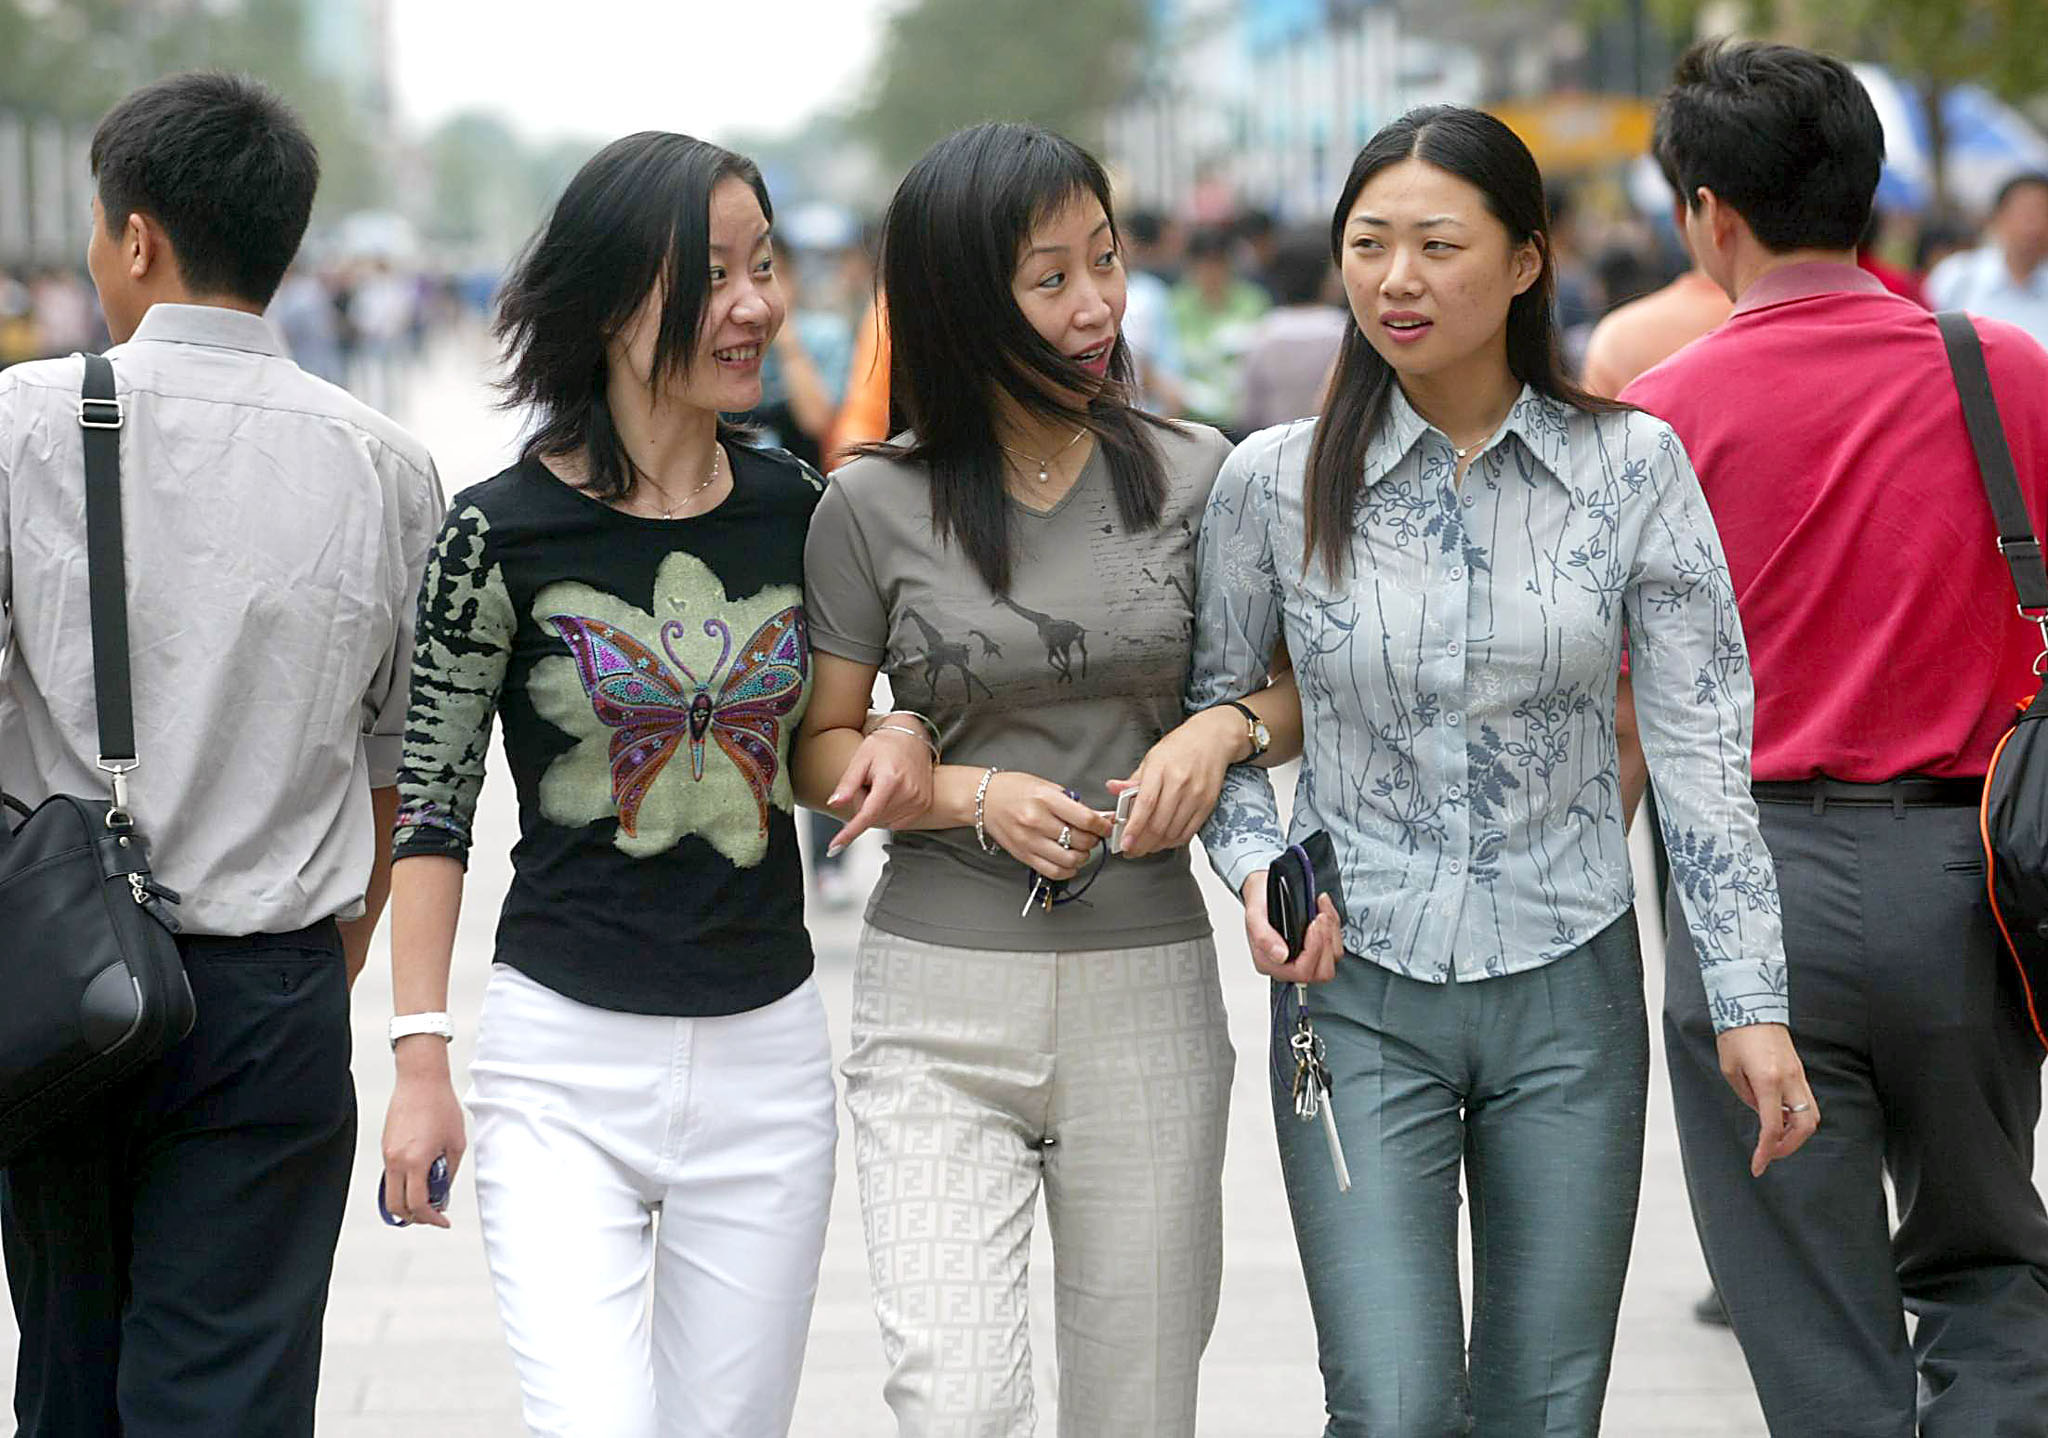 Chine: une université déconseille les tenues "suggestives"